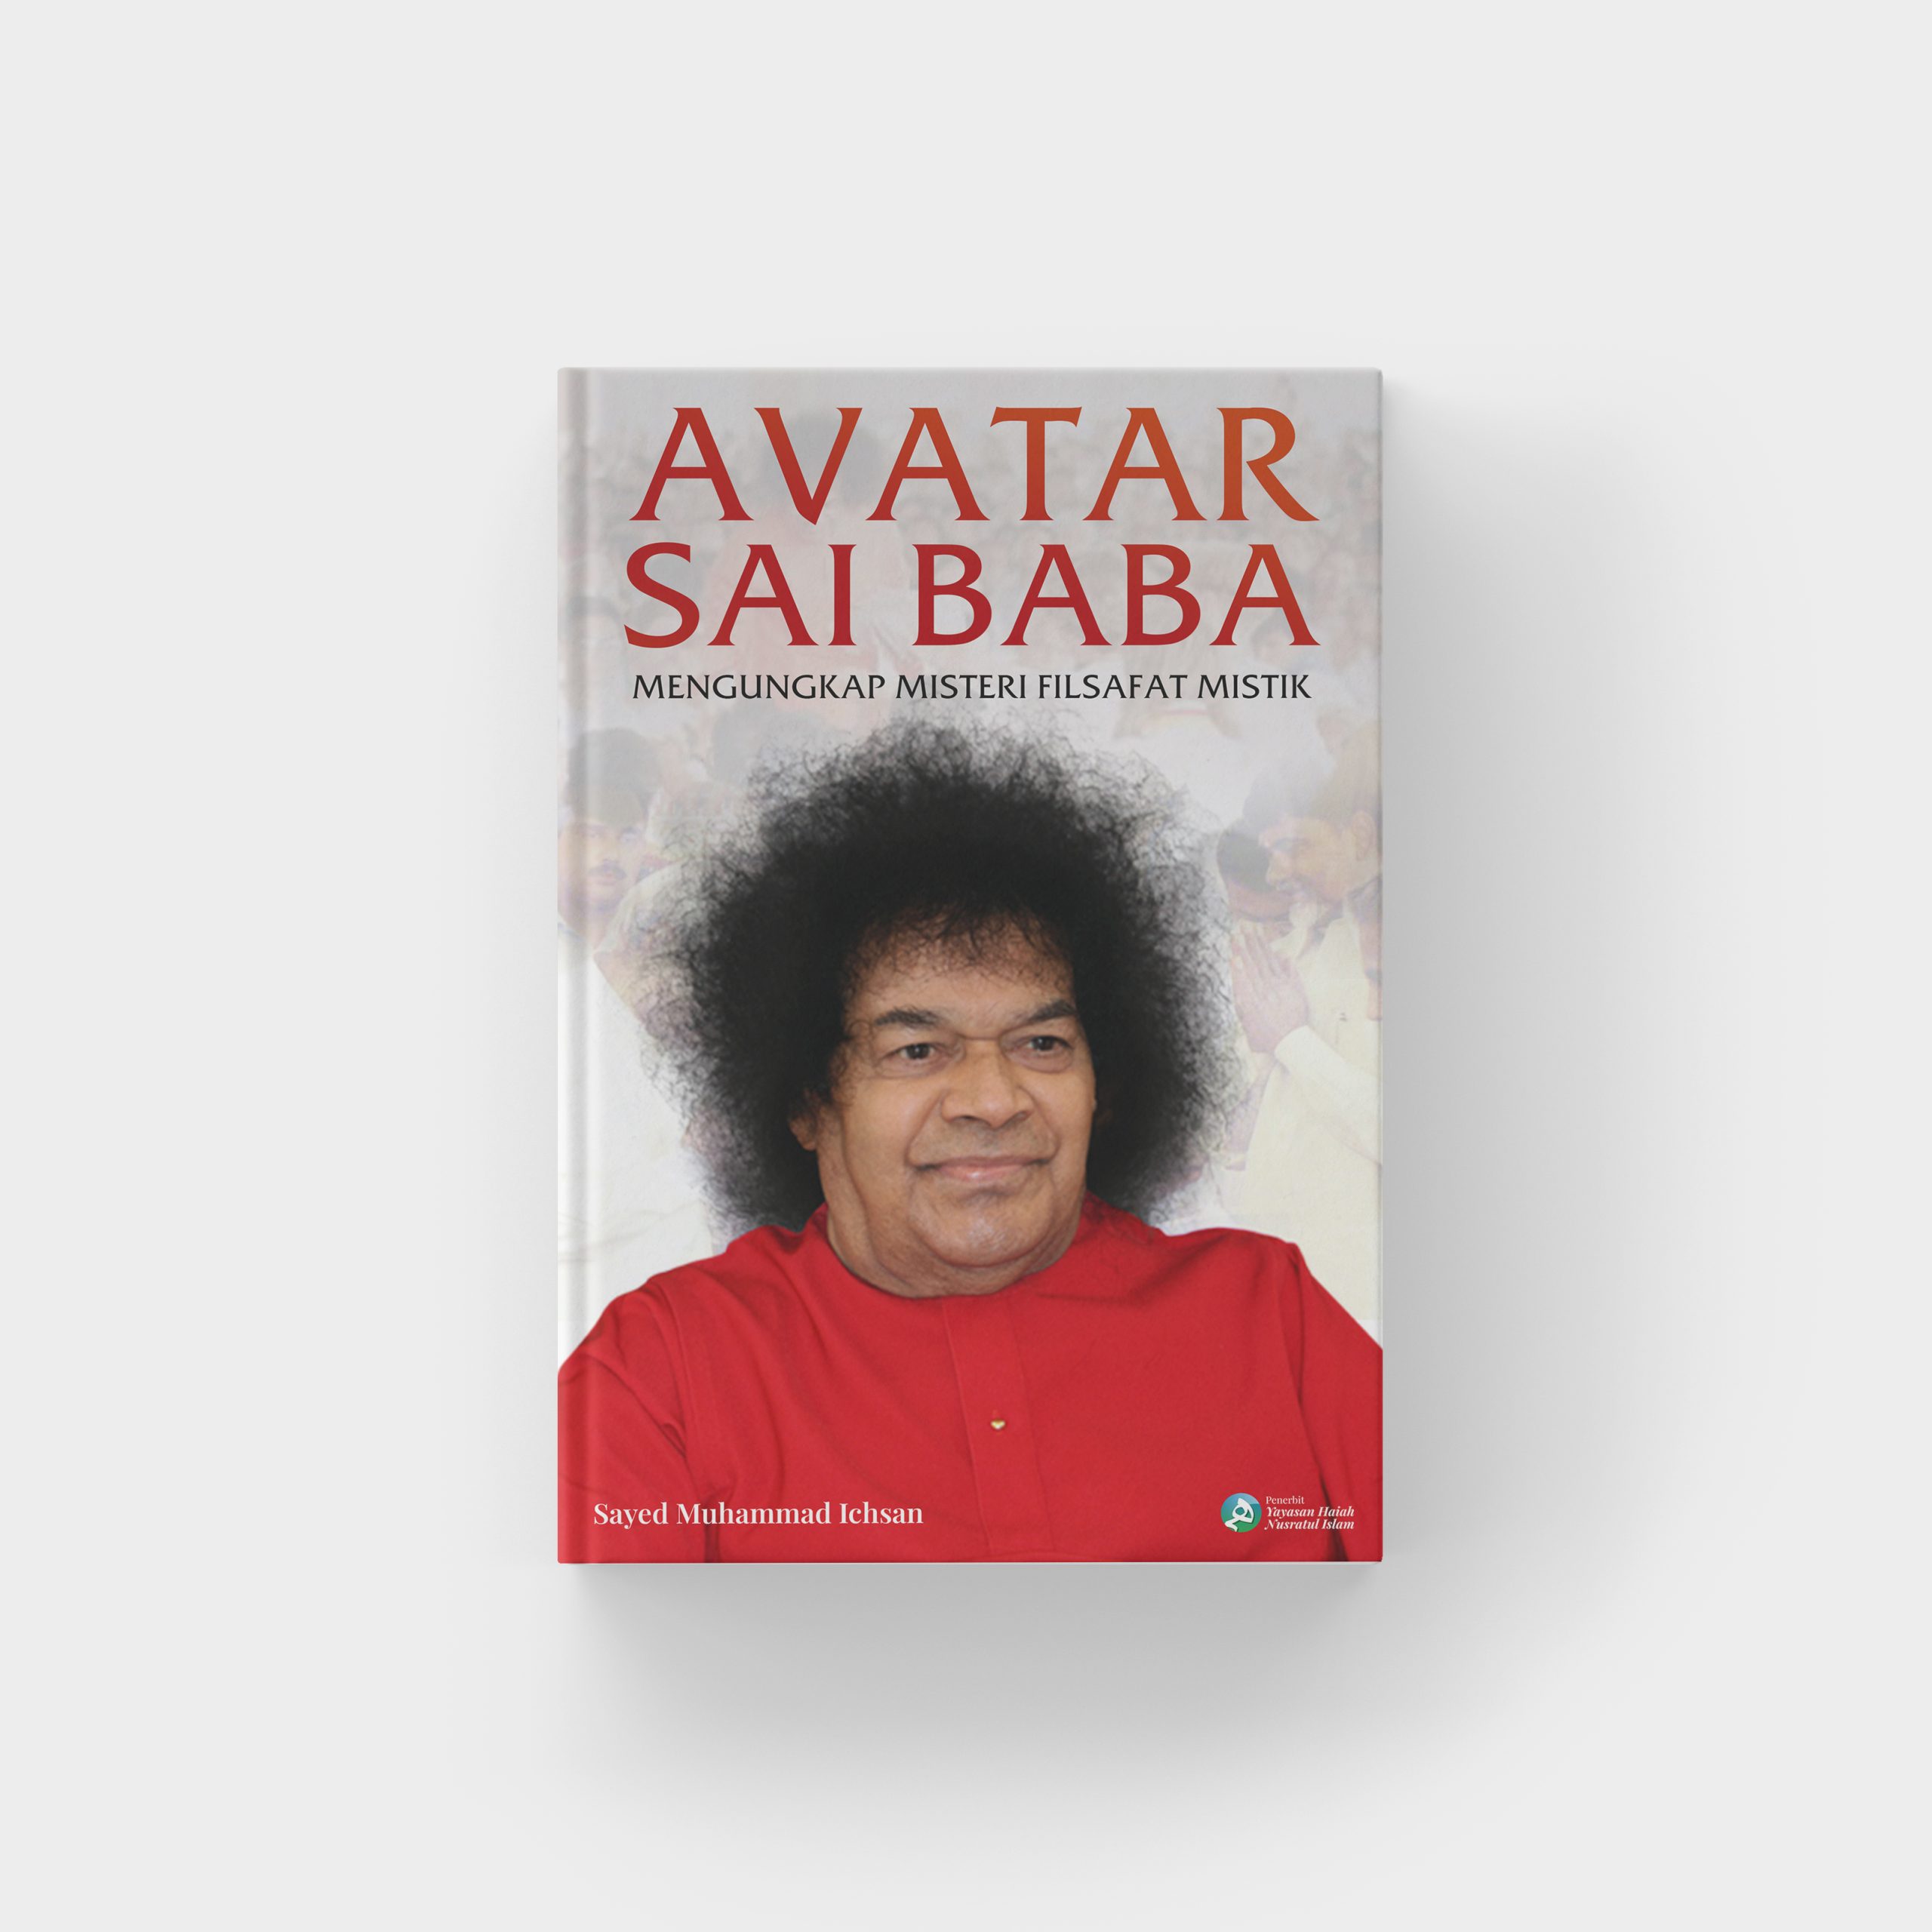 Avatar Sai Baba